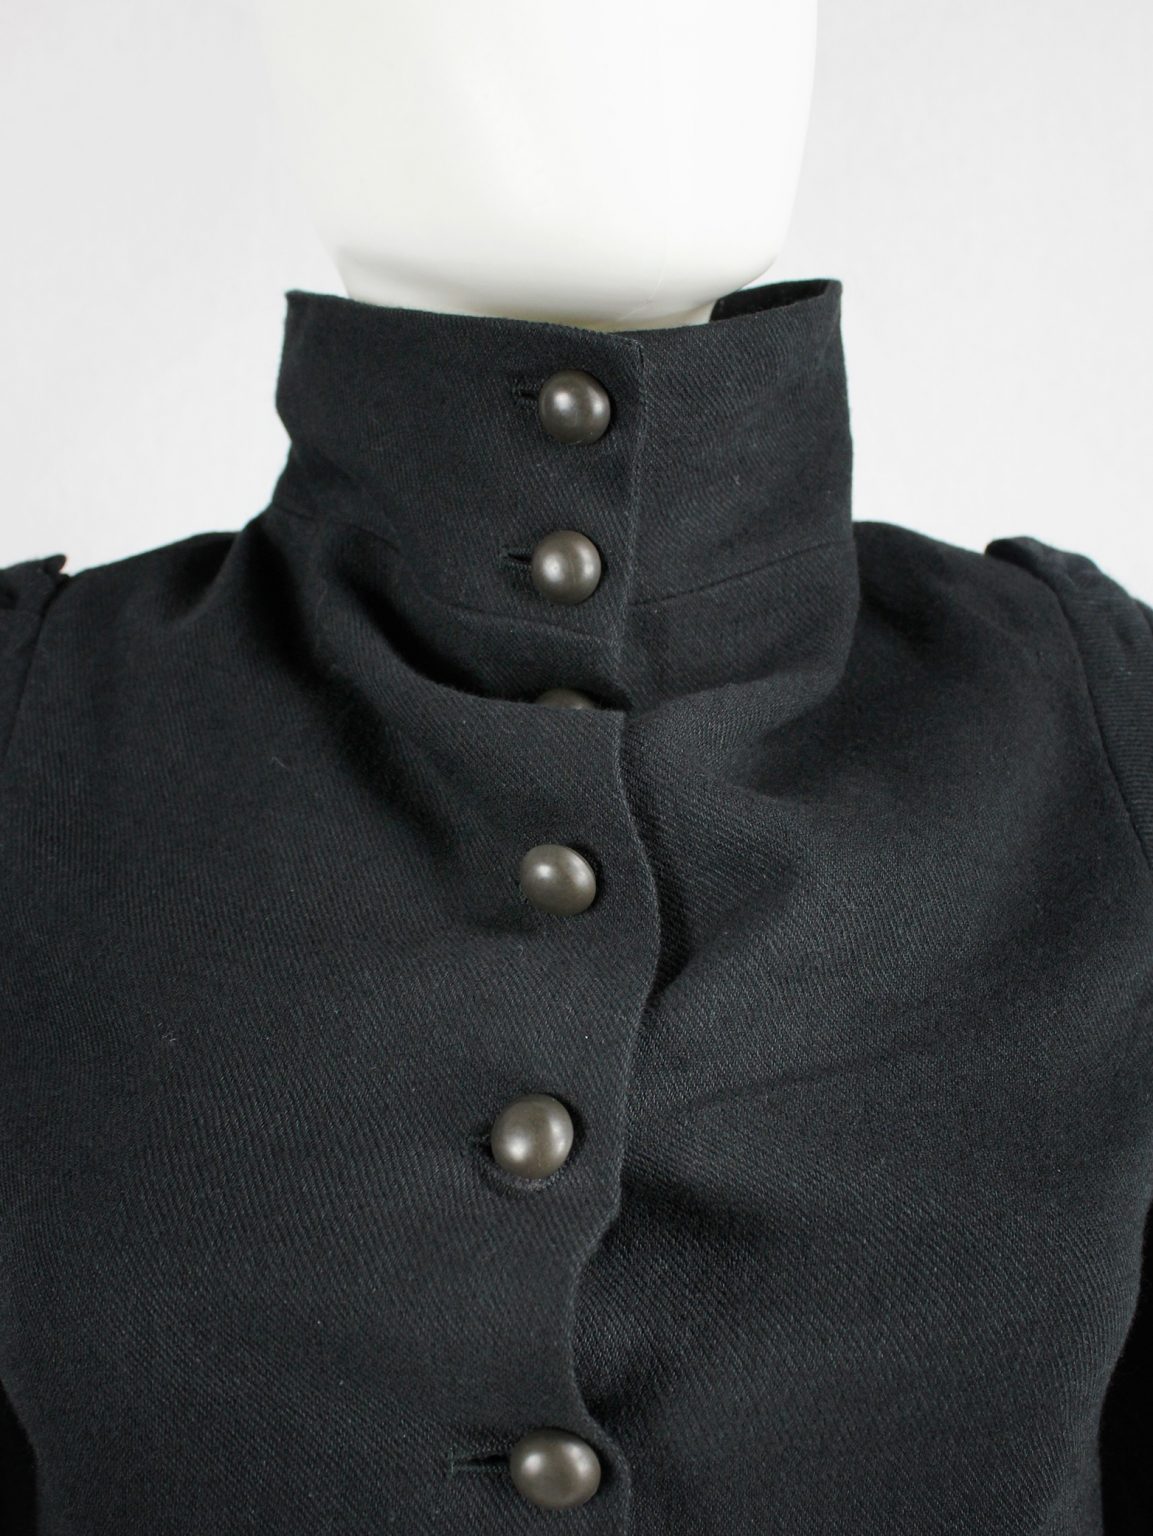 Ann Demeulemeester black victorian blazer with brass buttons — fall 2009